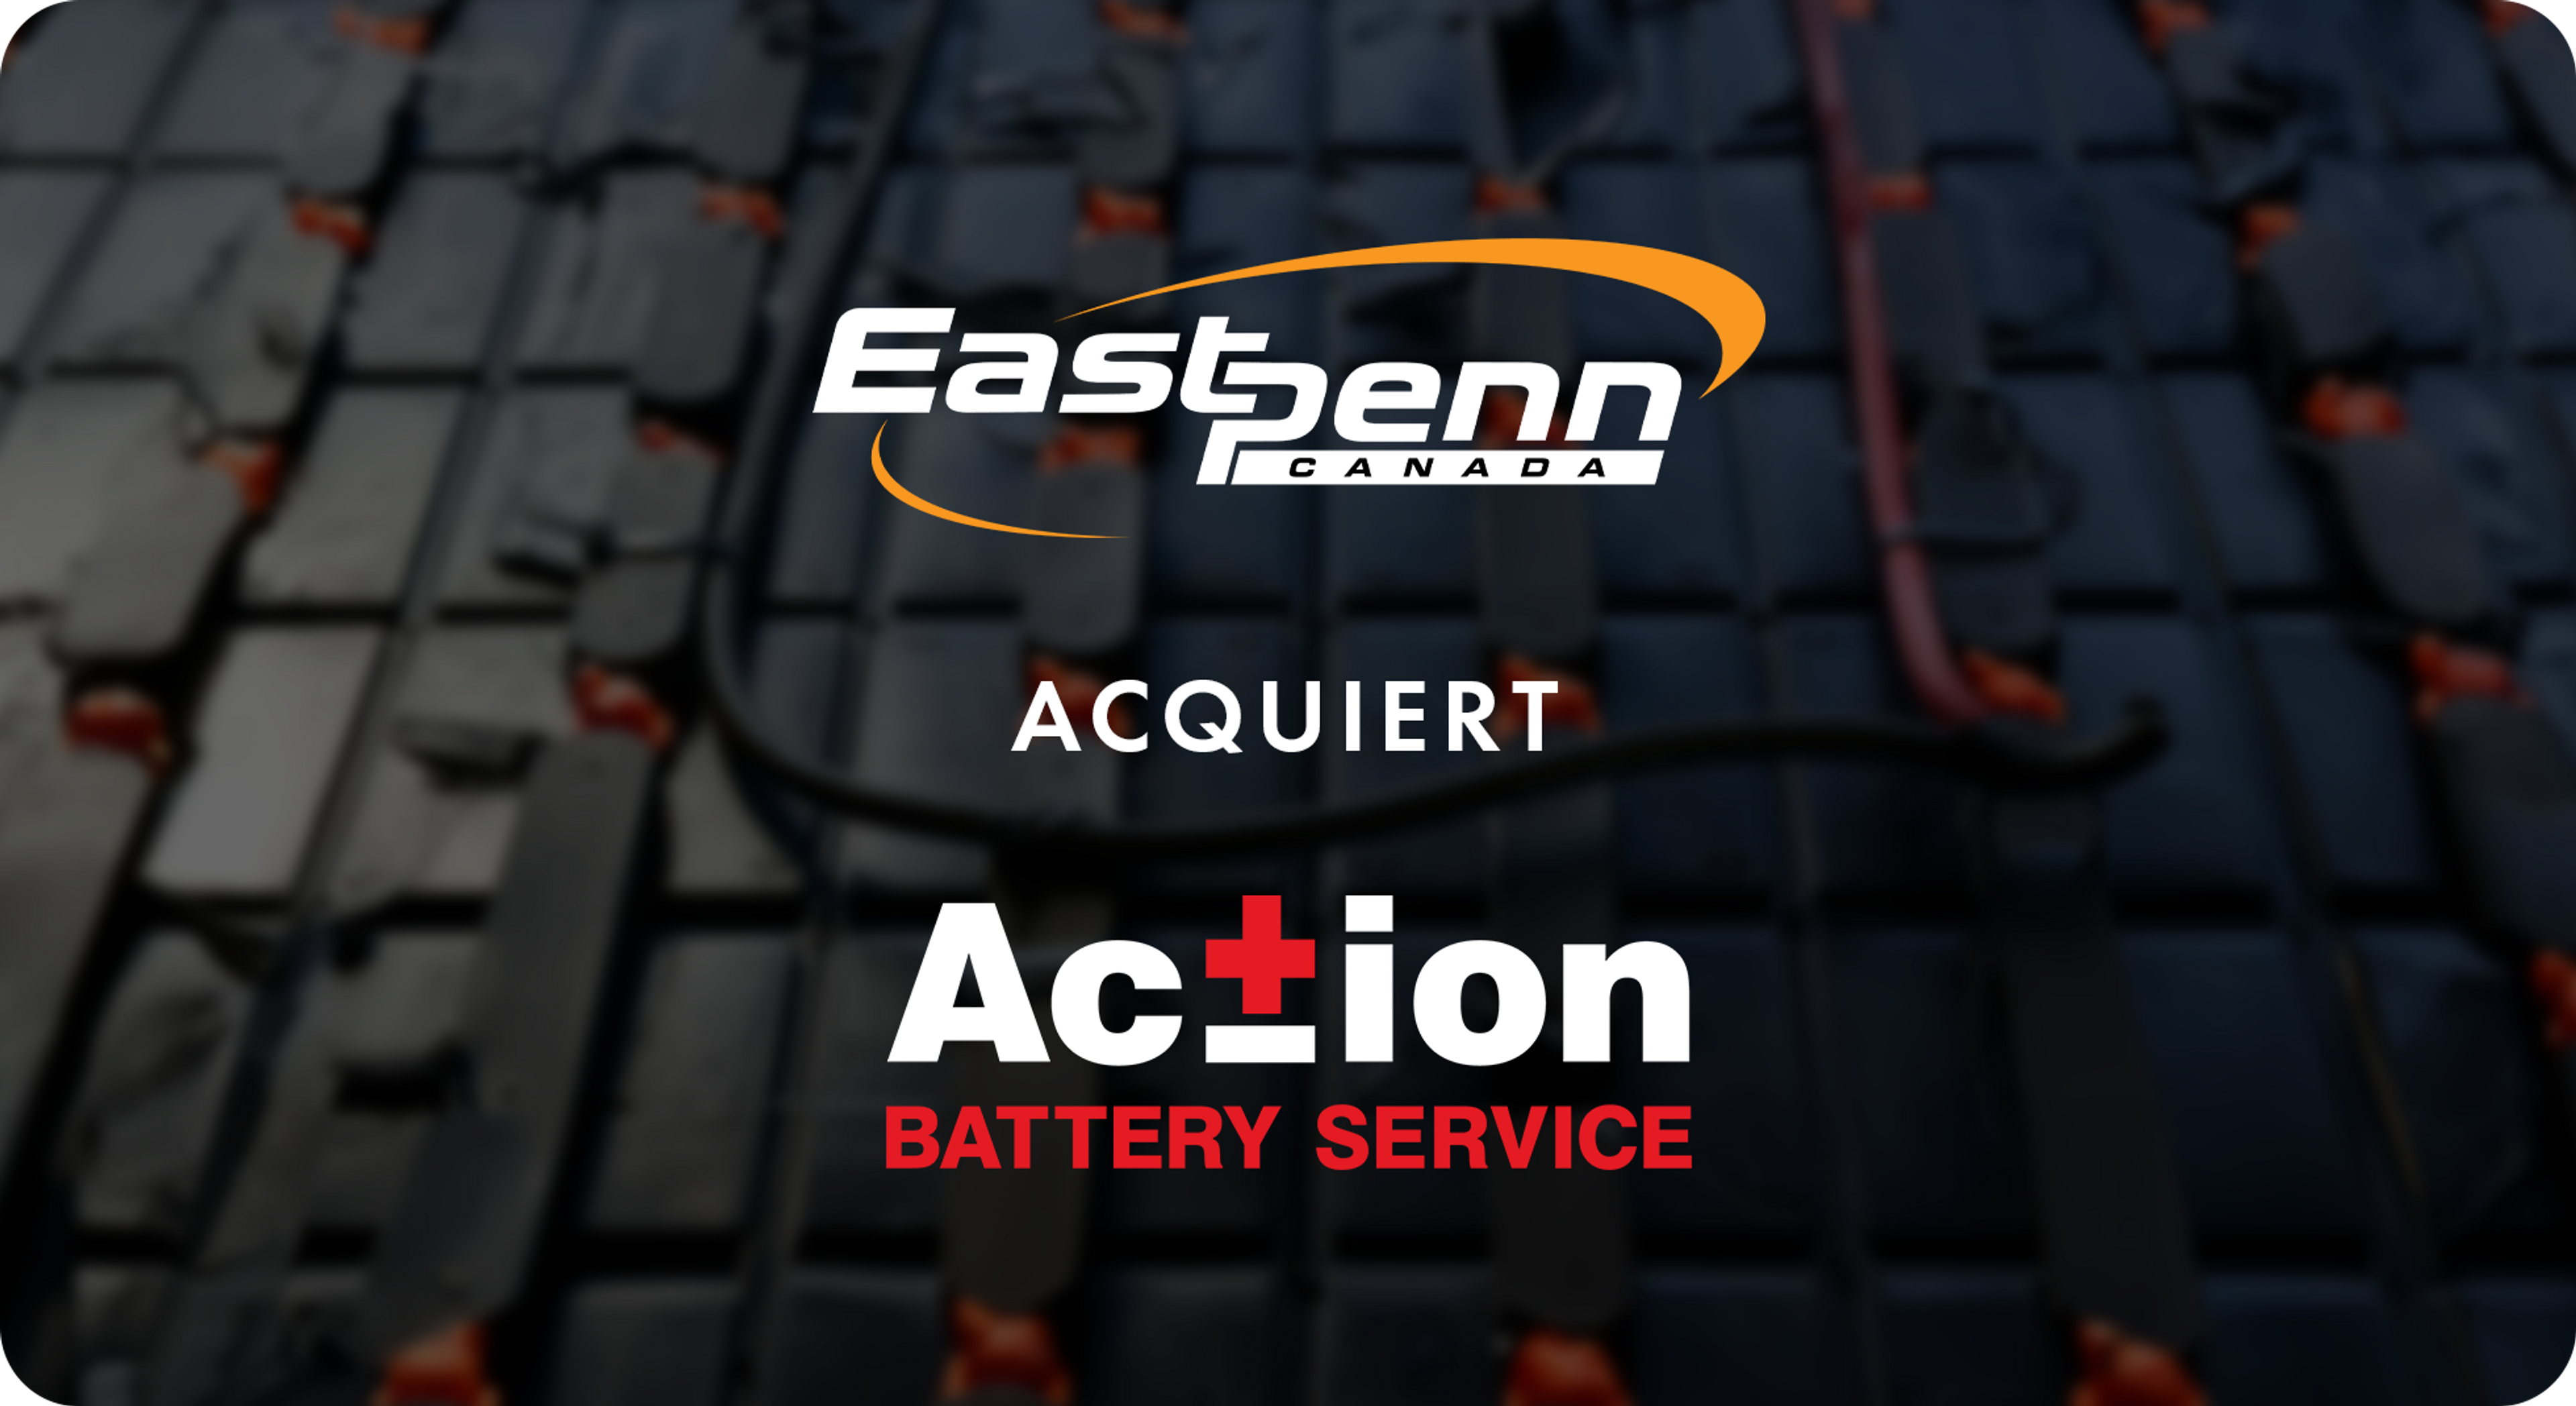 à l’acquisition d’Action Battery Service